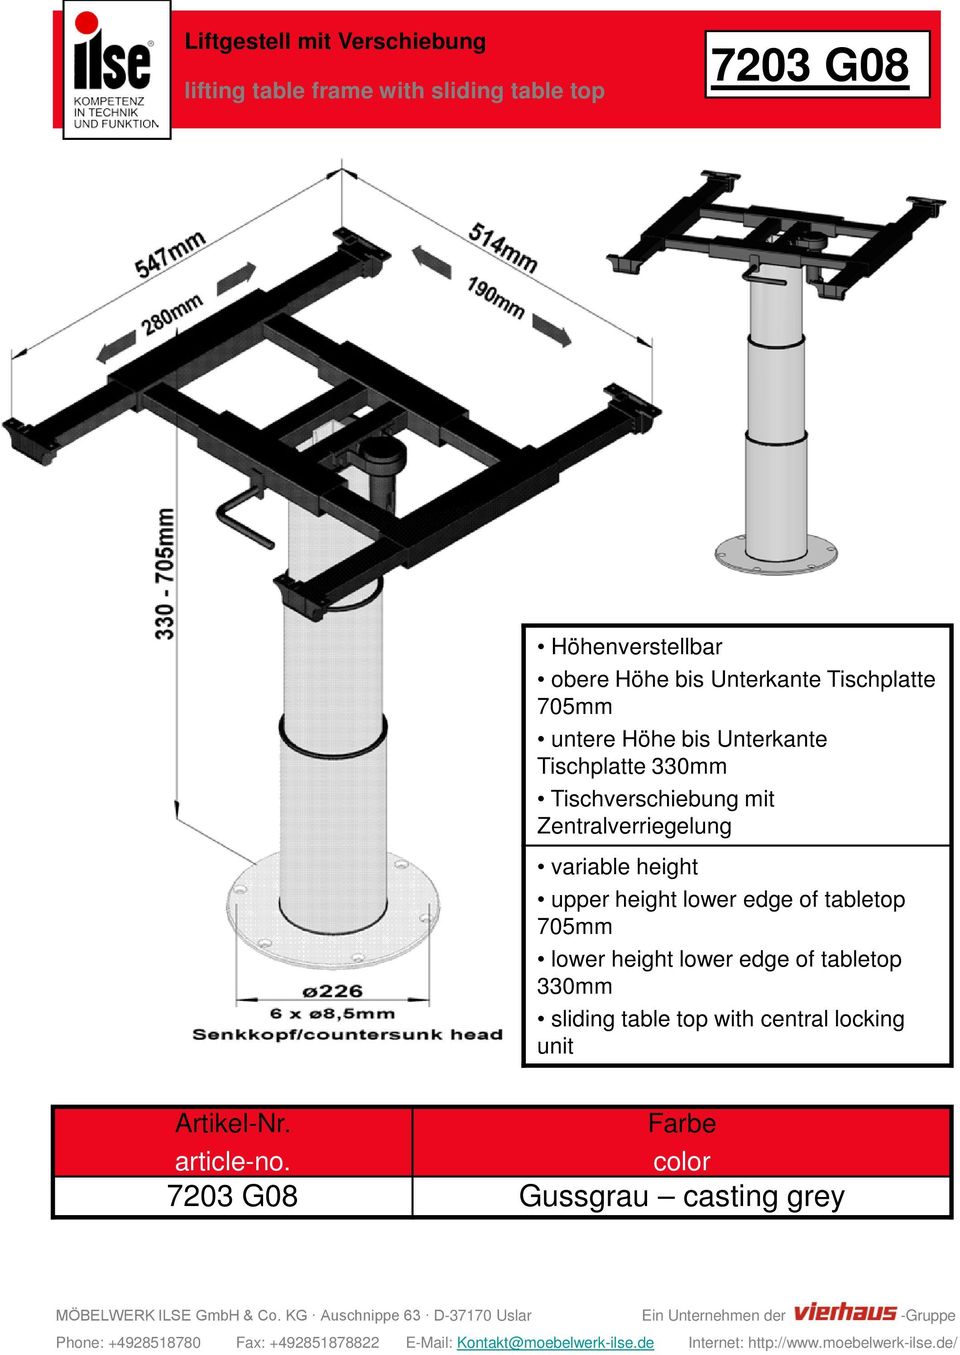 Tischverschiebung mit Zentralverriegelung variable height upper height lower edge of tabletop 705mm